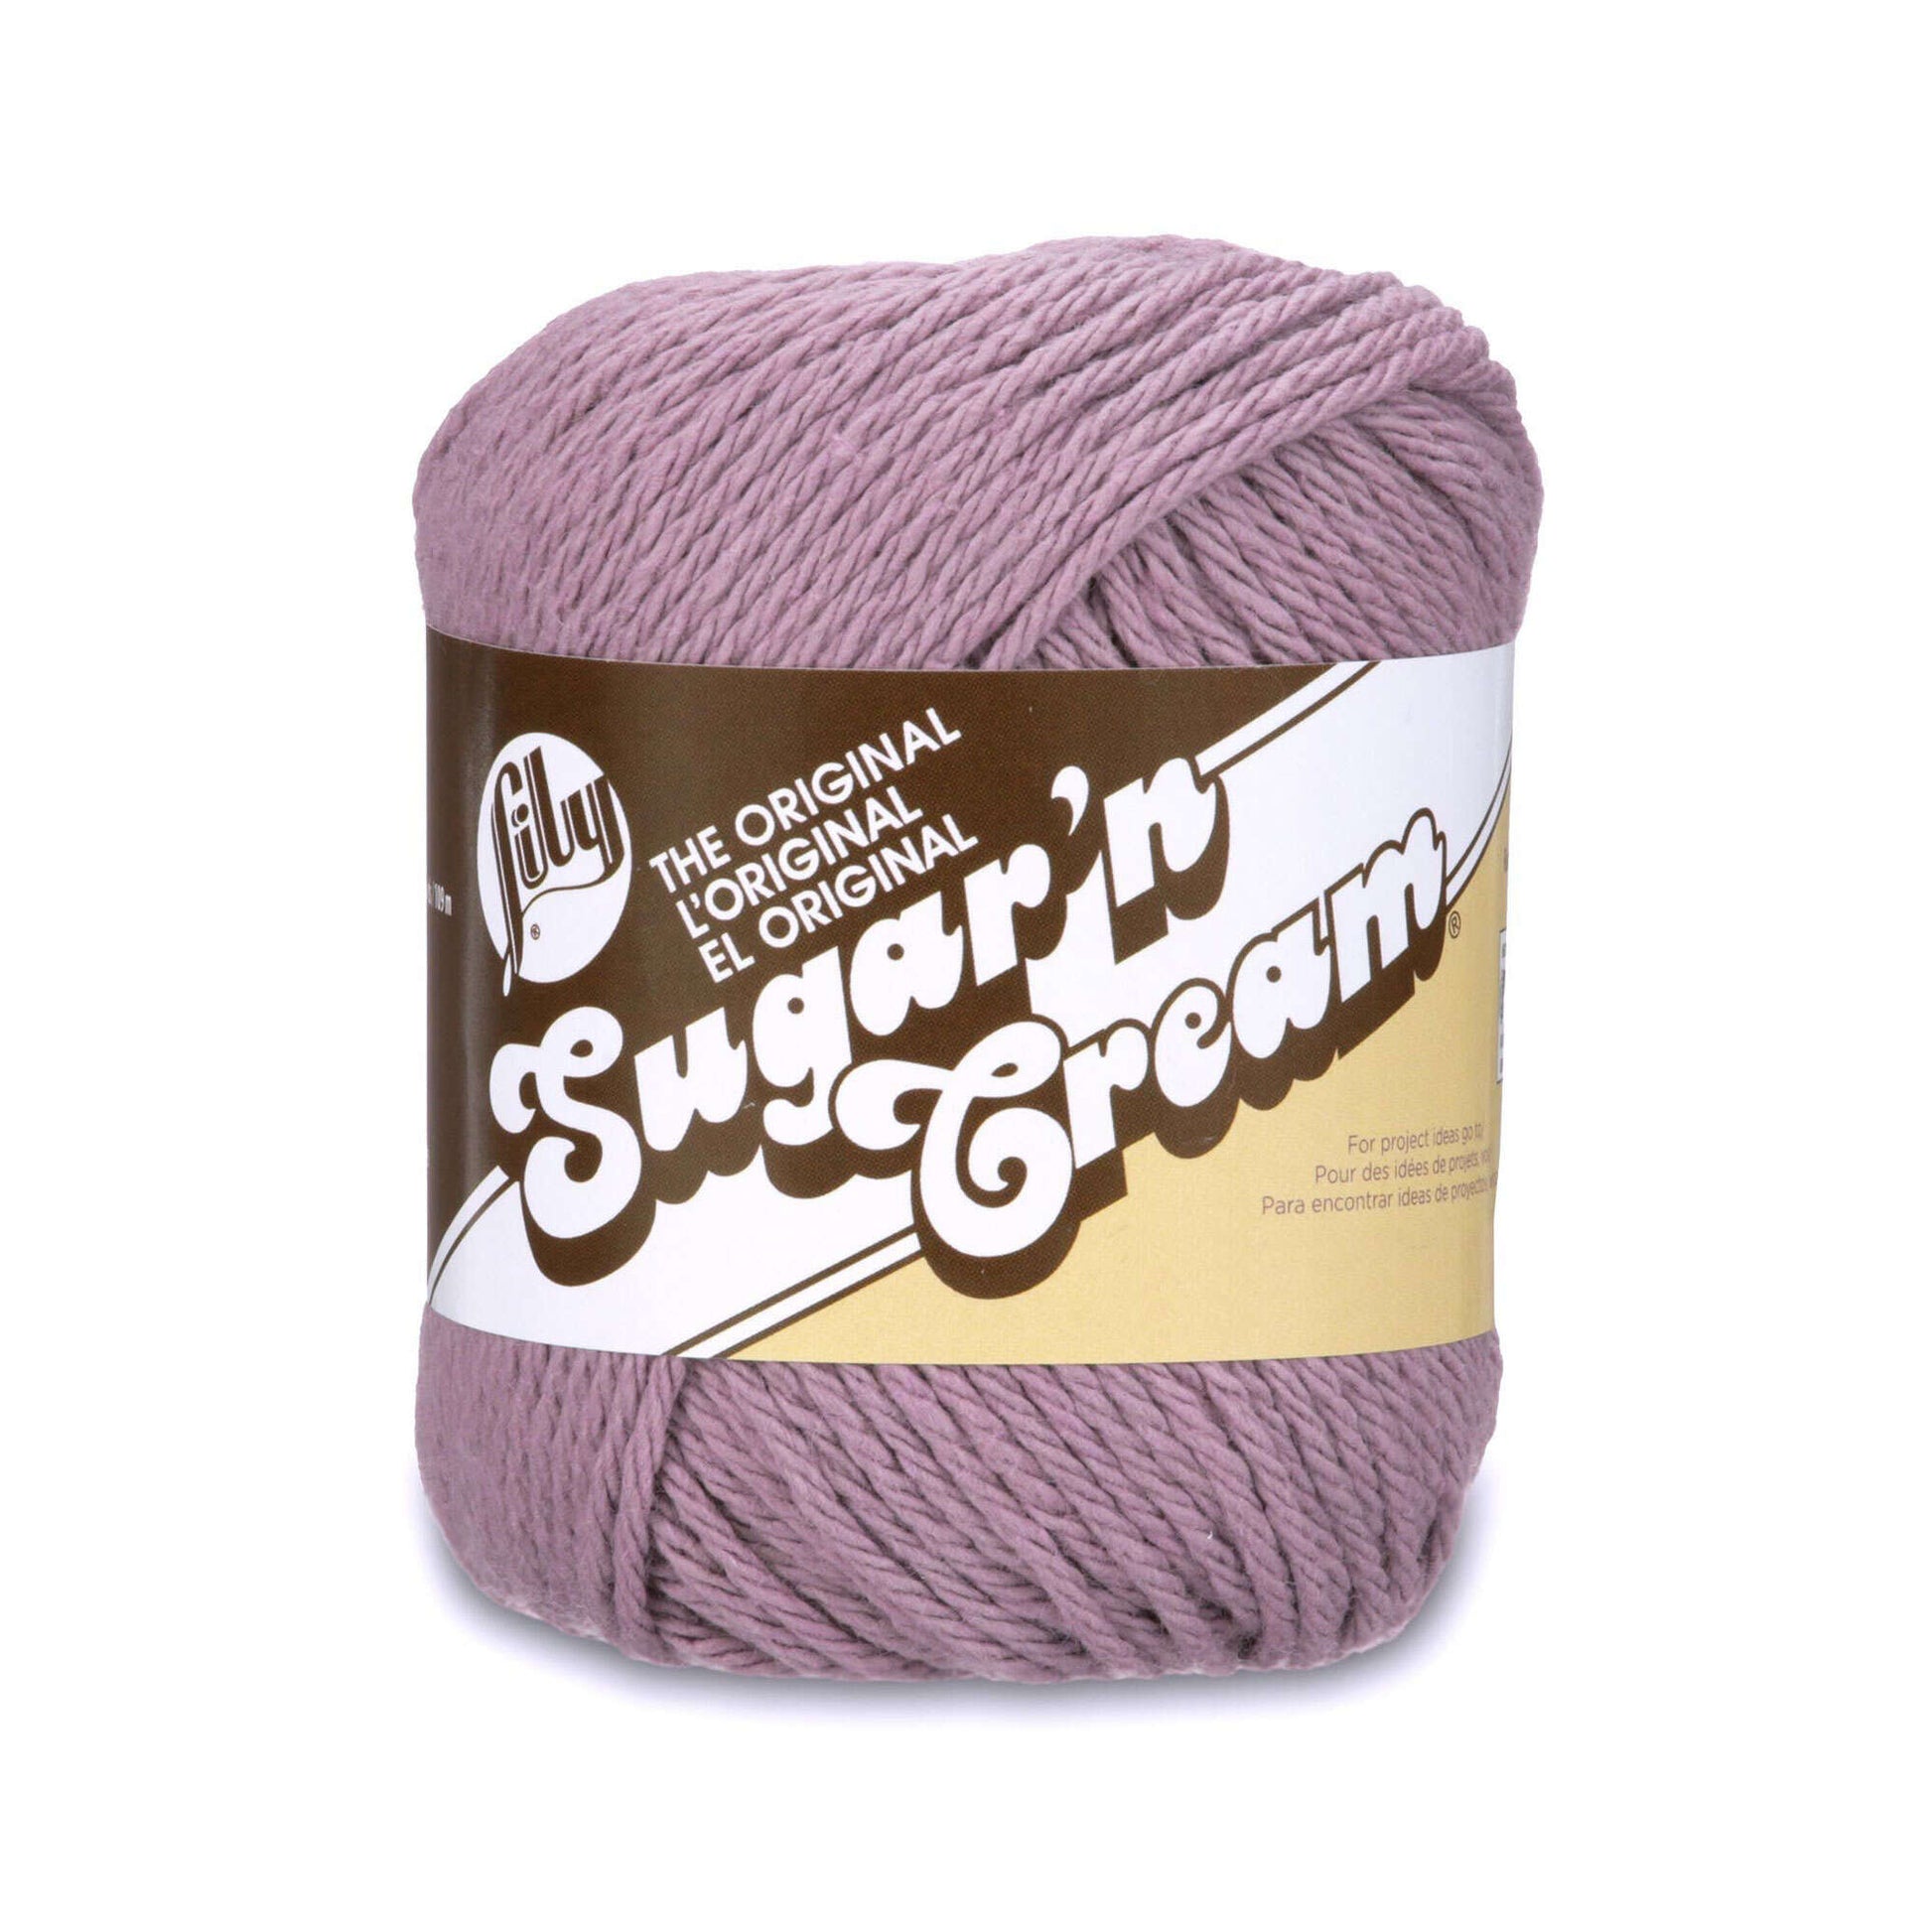 Lily Sugar'n Cream The Original Yarn - Discontinued Shades